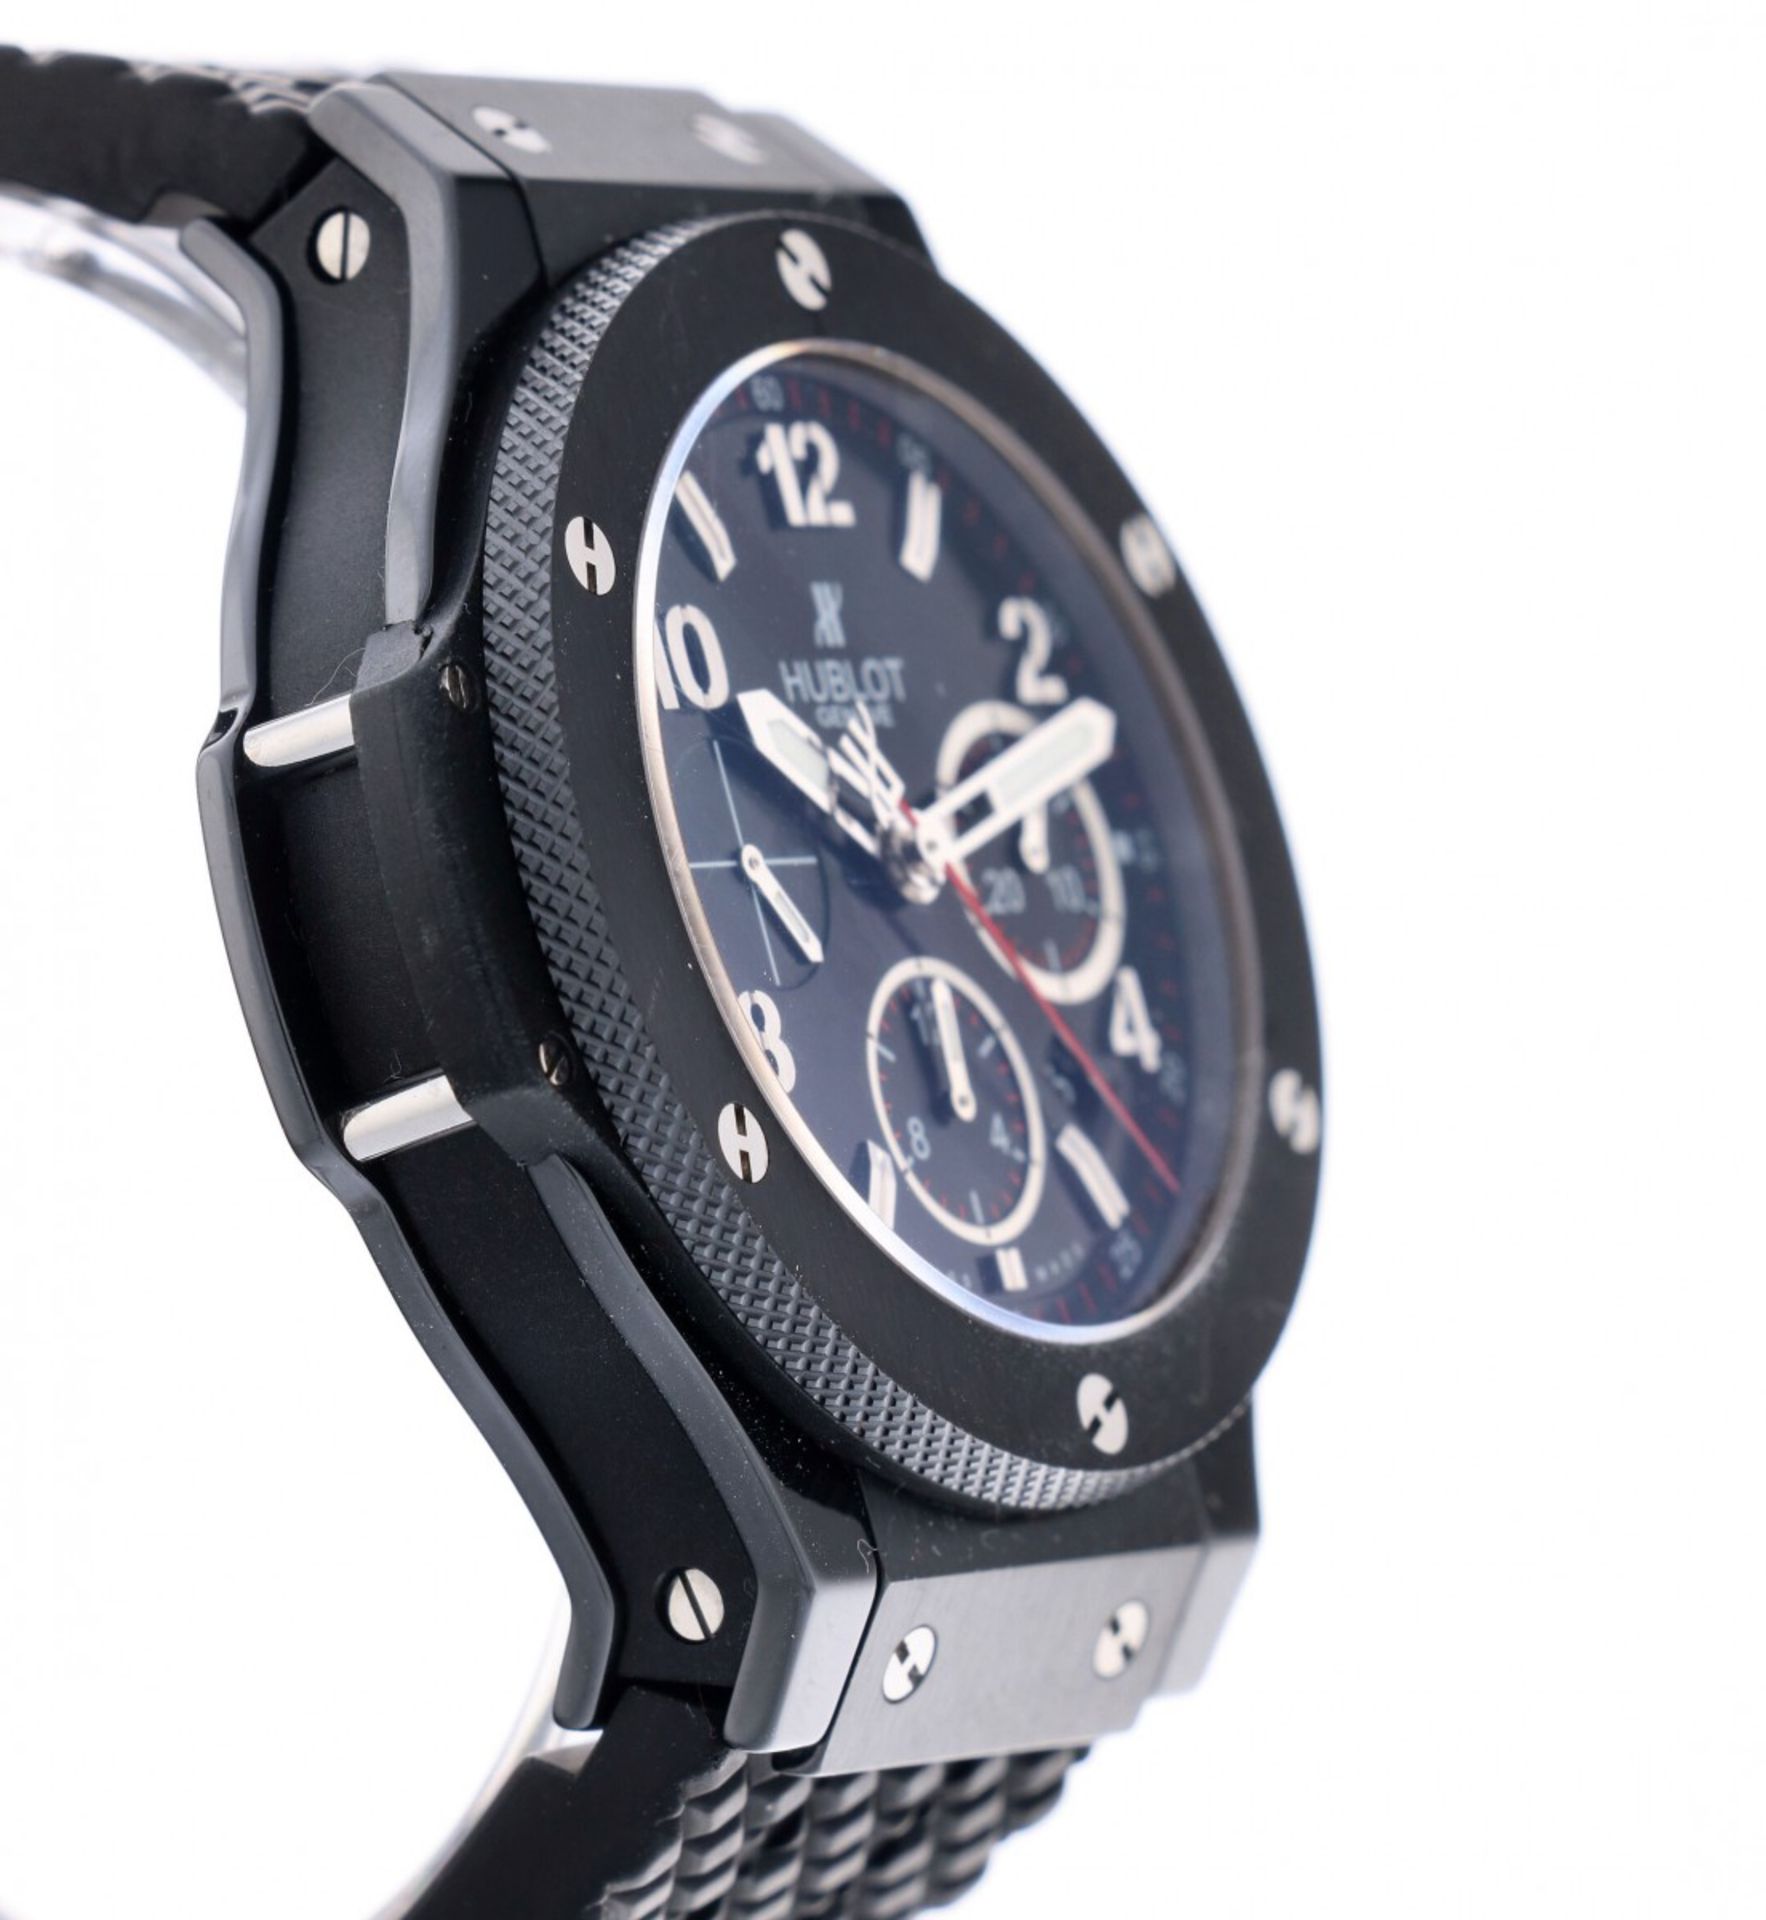 Hublot Big Bang 342.CX.130.RX - Men's watch - ca. 2014 - Image 4 of 6